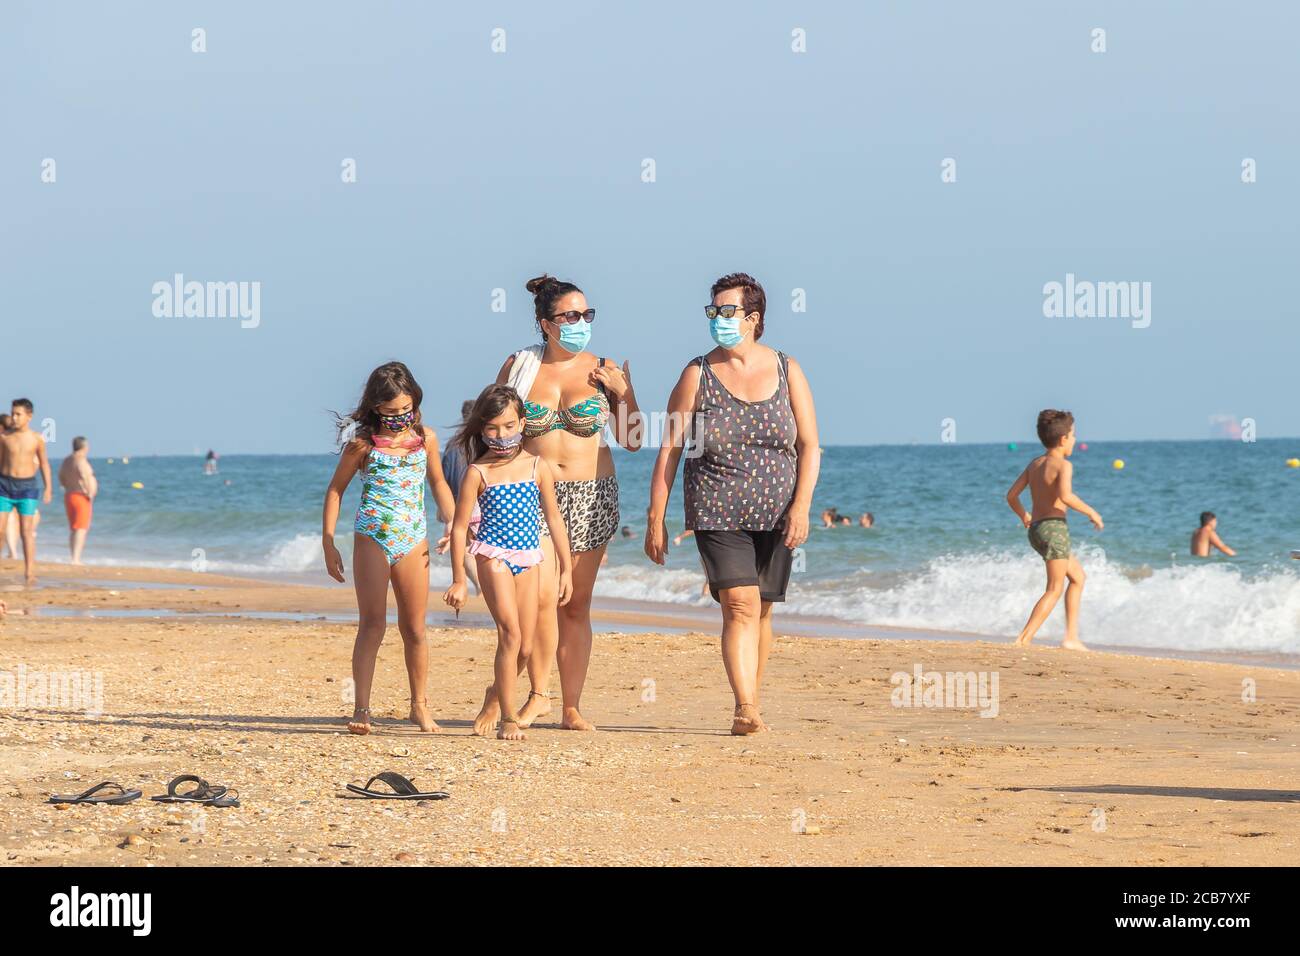 Punta Umbria, Huelva, Espagne - 7 août 2020 : famille marchant sur la plage avec des masques protecteurs ou médicaux. Nouvelle normale en Espagne avec di social Banque D'Images